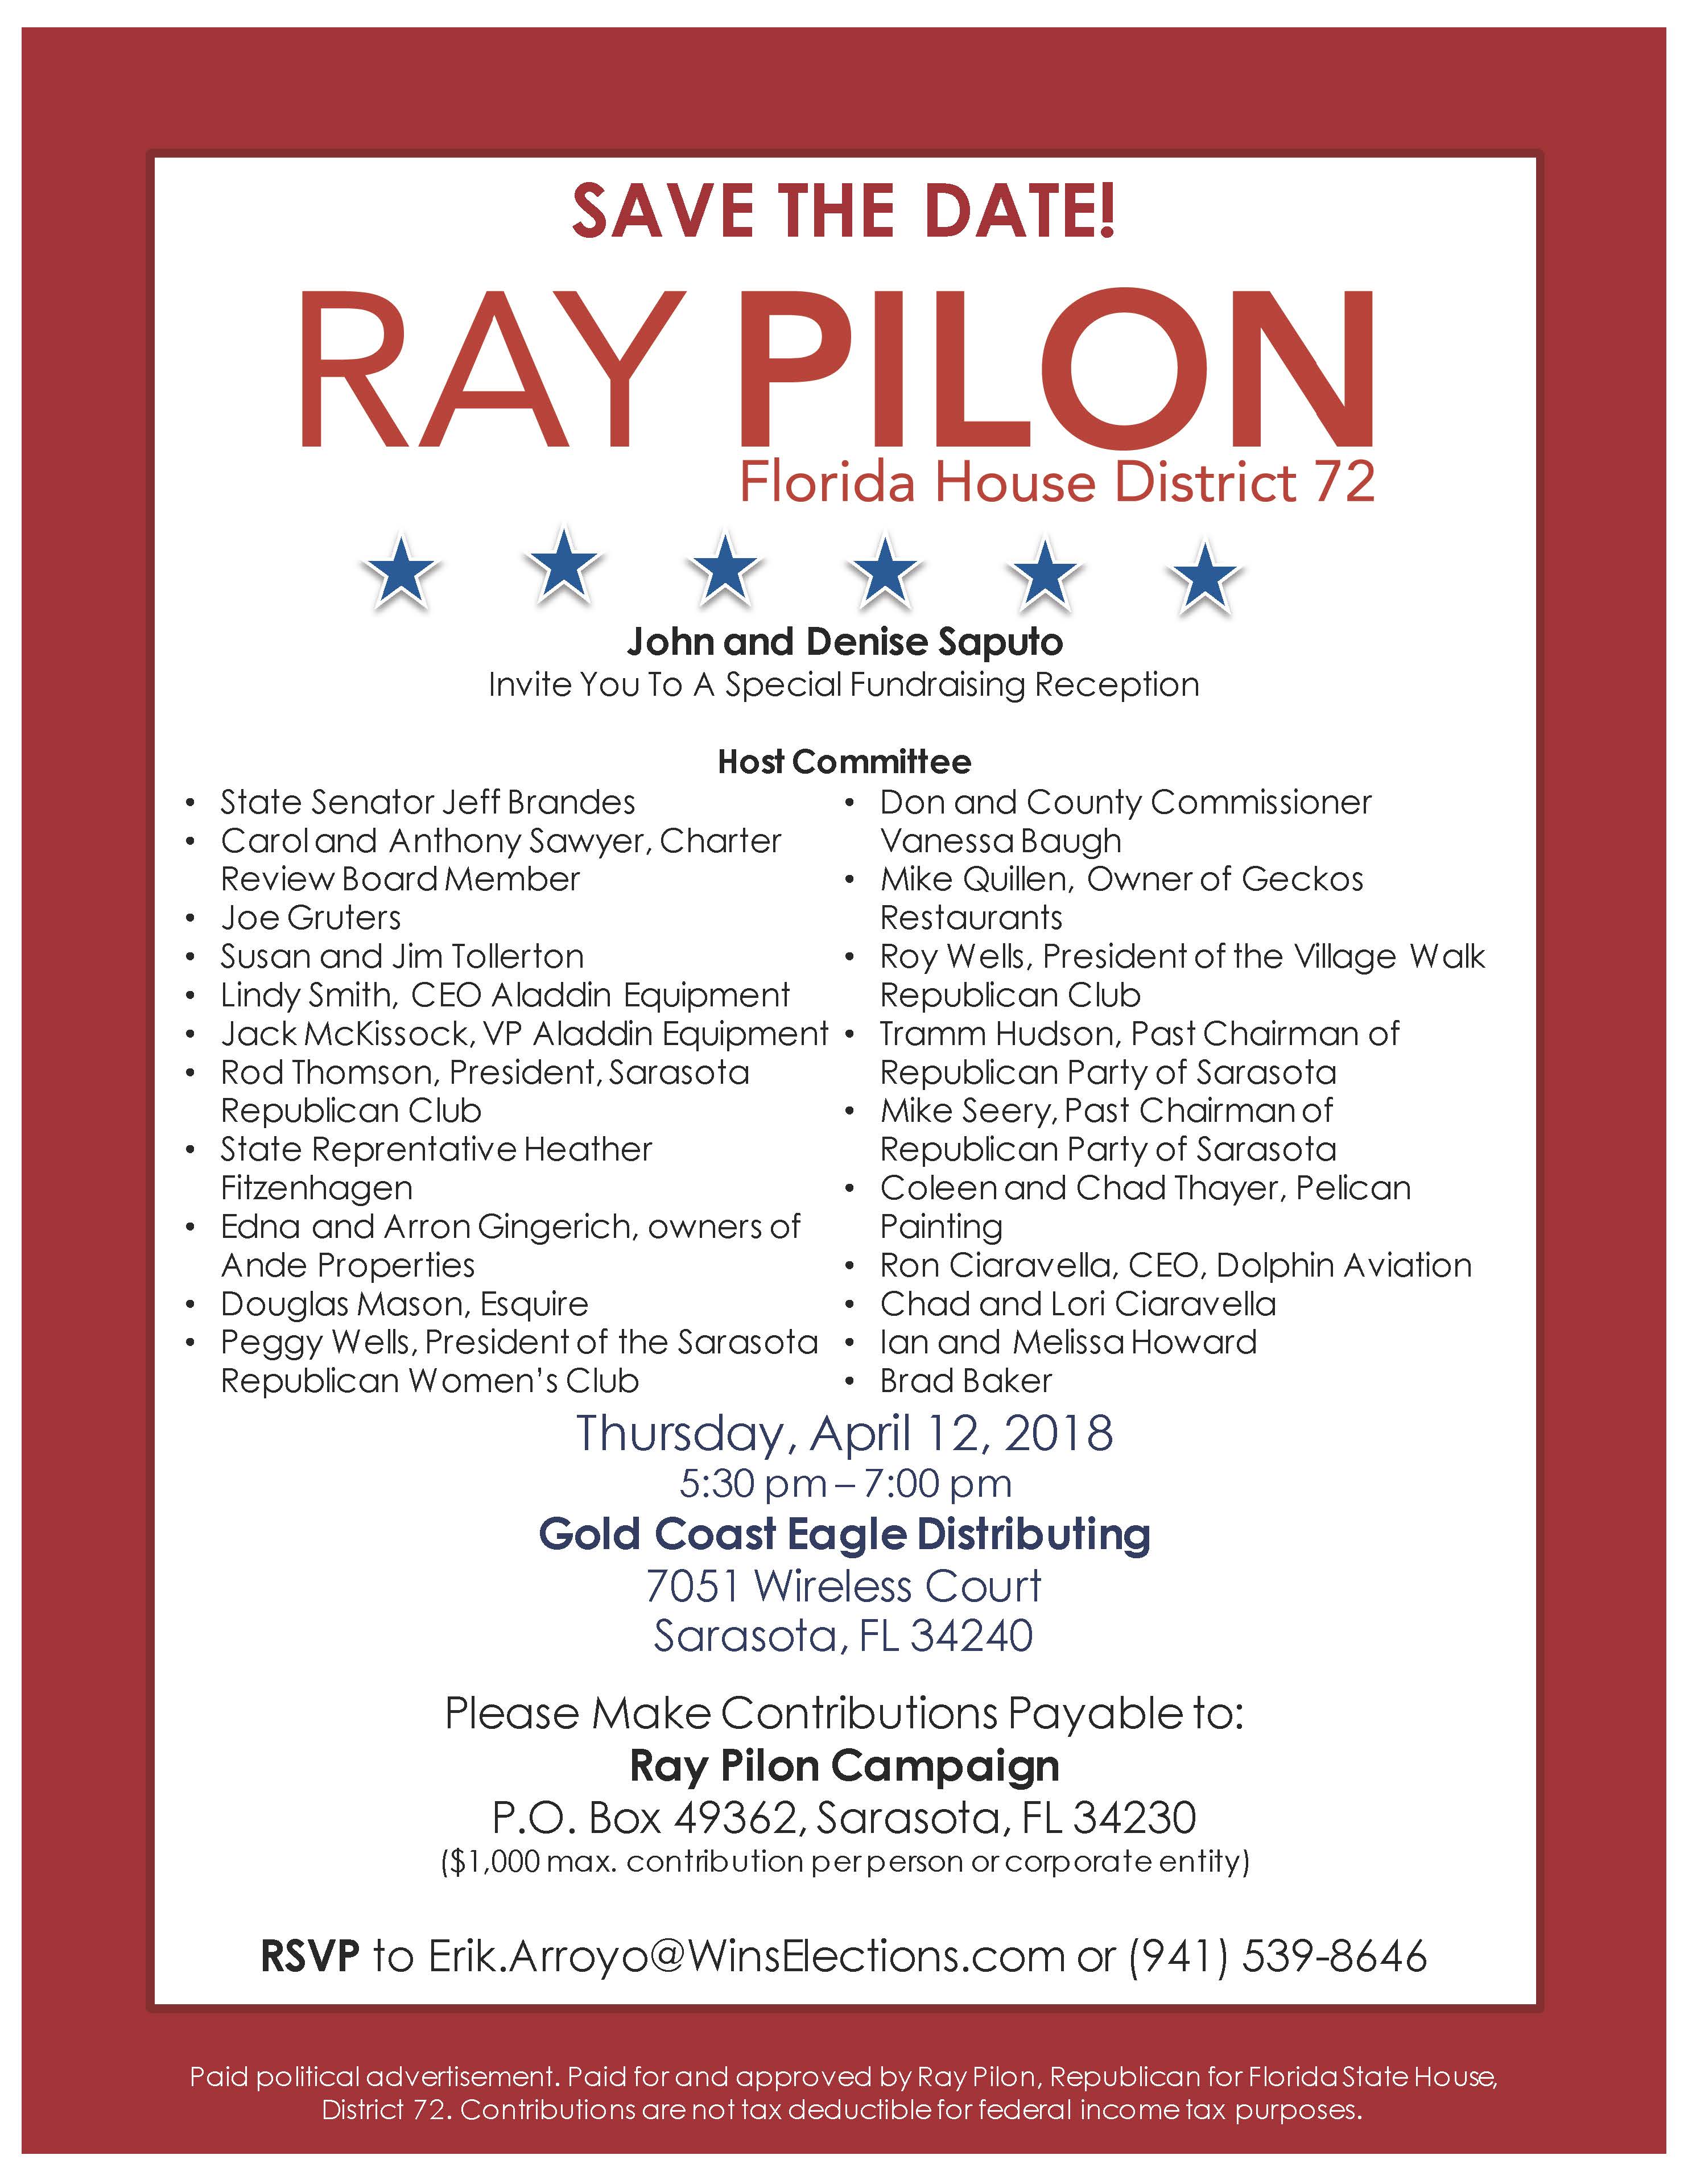 Ray Pilon Invite - April 12, 2018